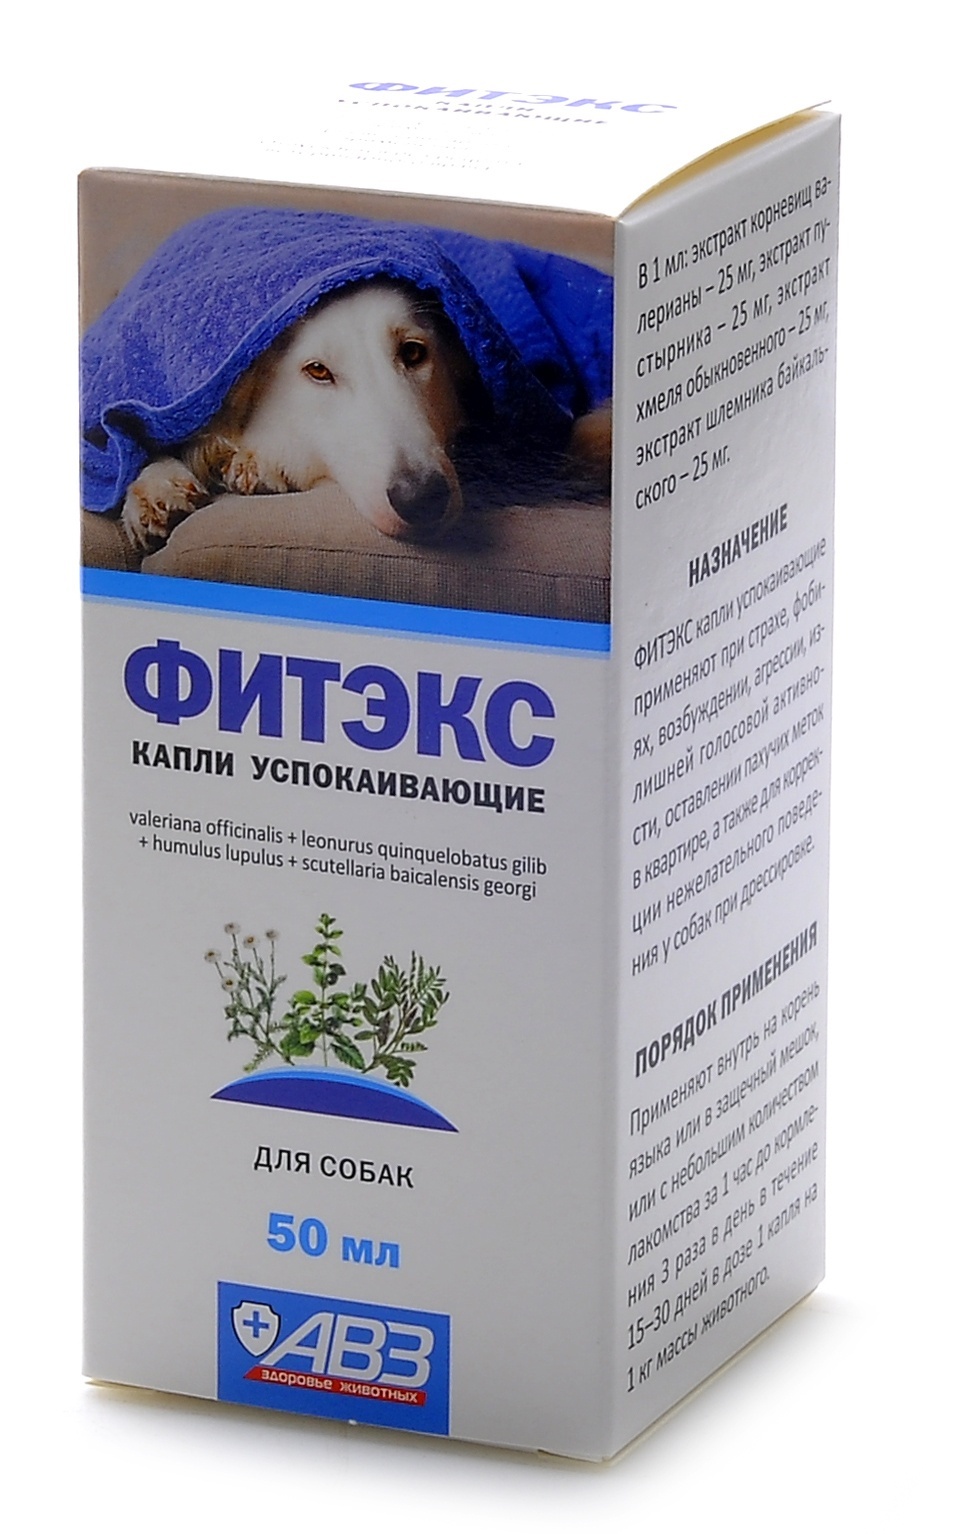 Агроветзащита Агроветзащита фитэкс для собак крупных пород (140 г) агроветзащита агроветзащита антигельминтный препарат диронет 1000 широкого спектра действия таблетки для собак крупных пород 10 г